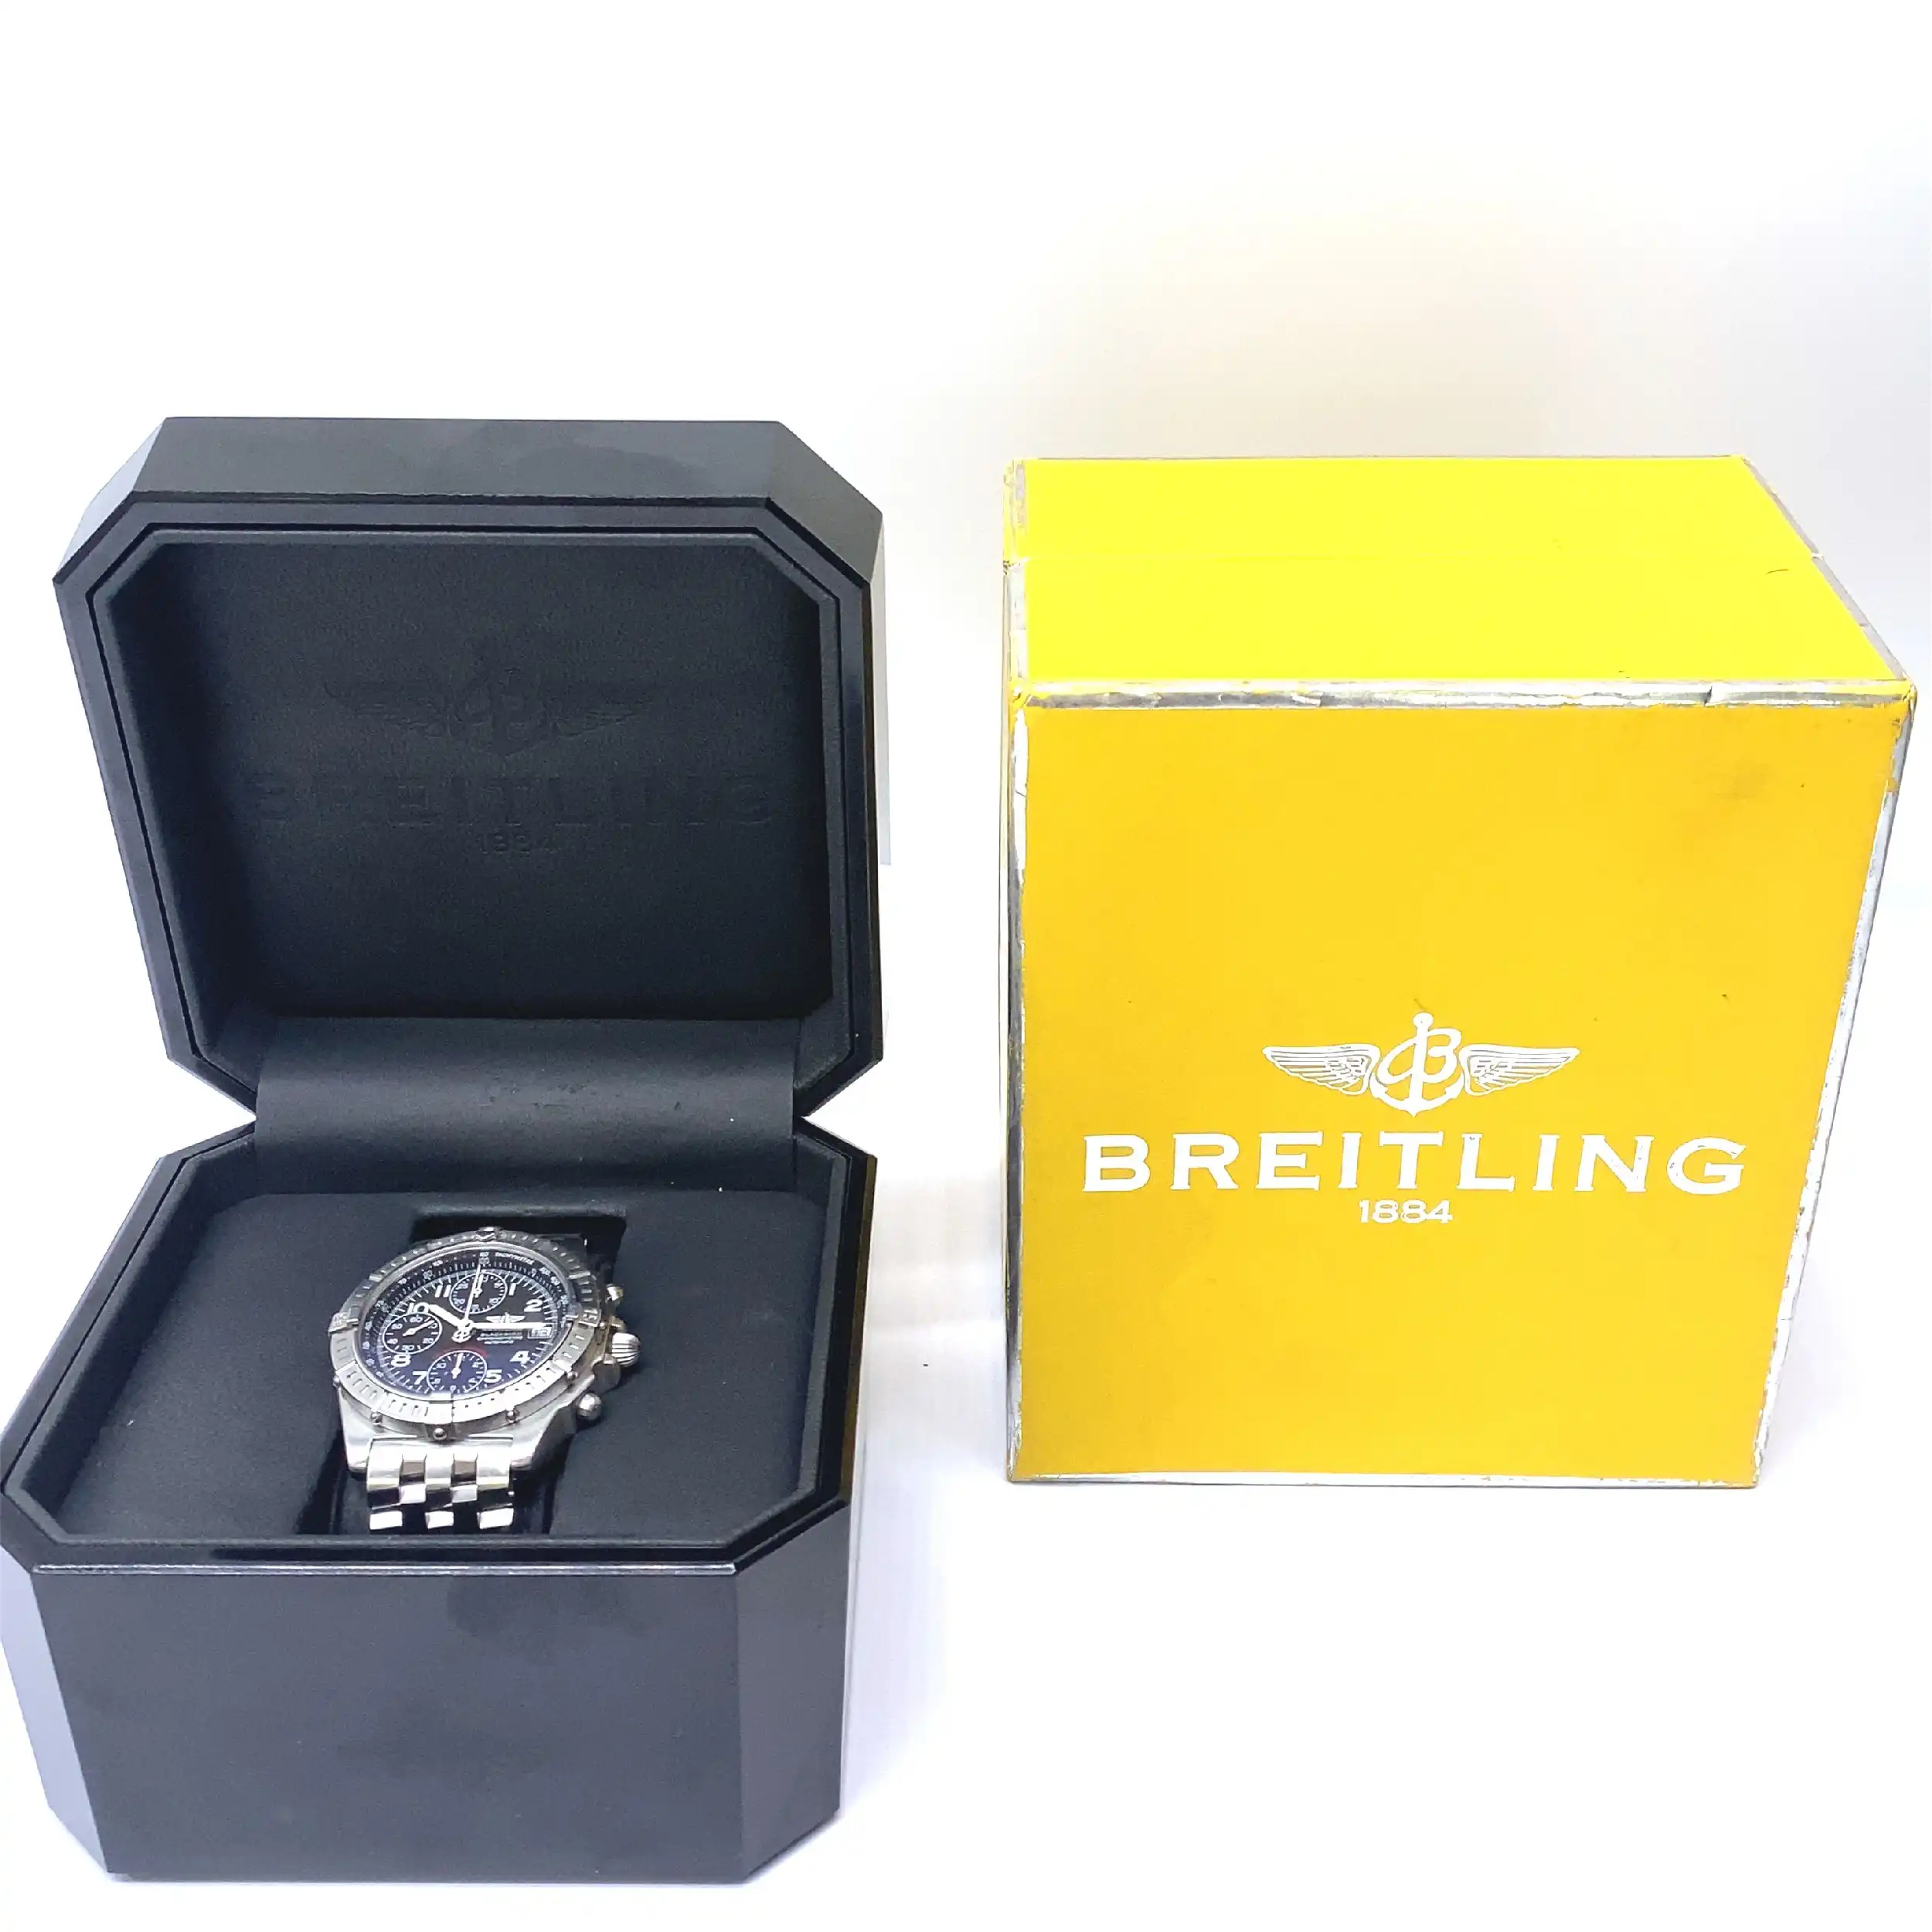 Herrenuhr Breitling Blackbird Referenz A13353 Special Edition / Limitiert mit Box und Umkarton